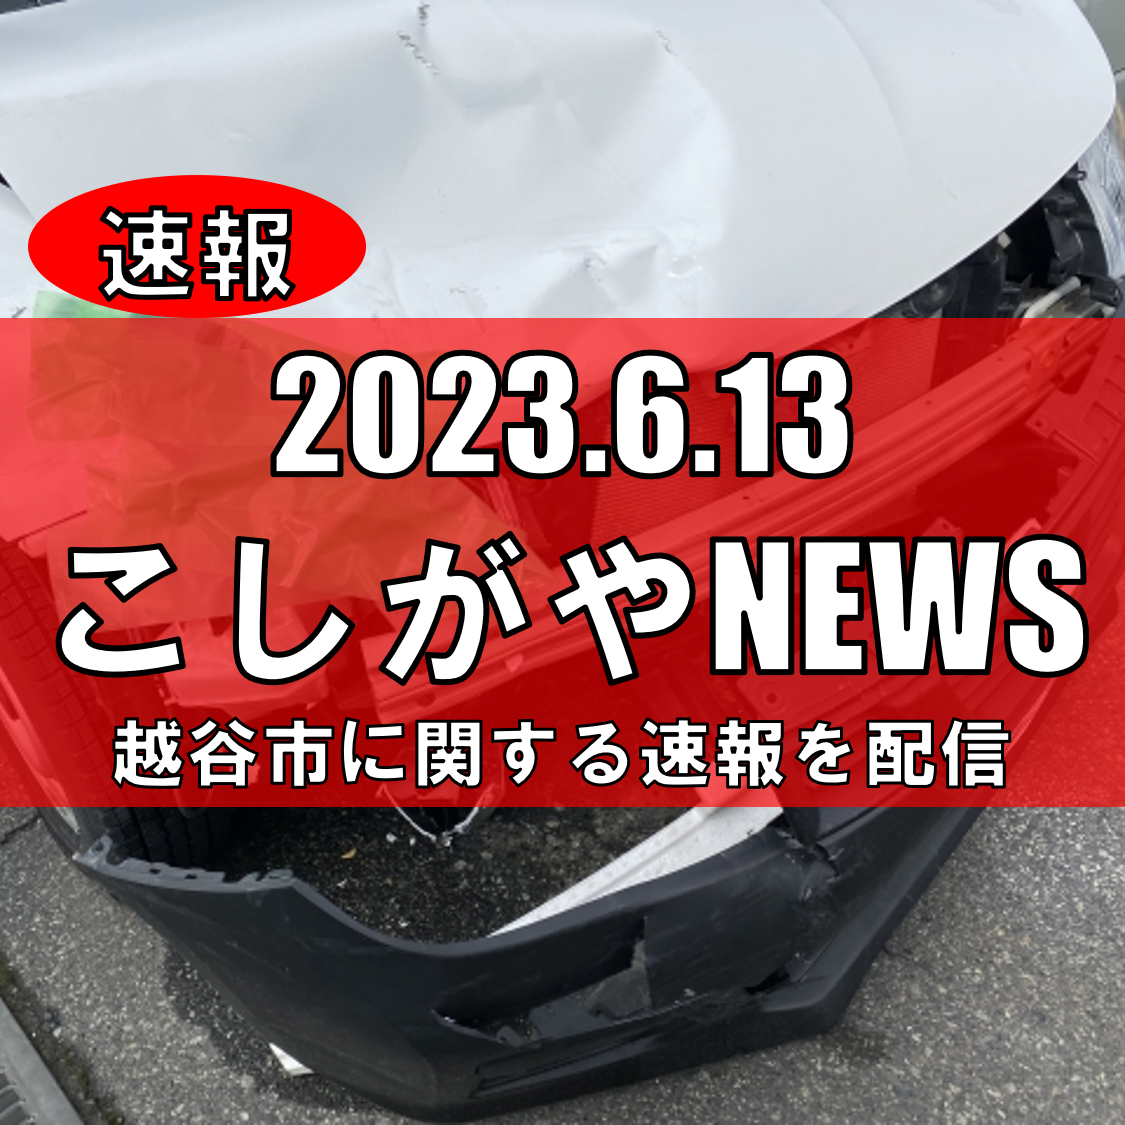 【越谷ニュース】恩間で交通死亡事故が発生